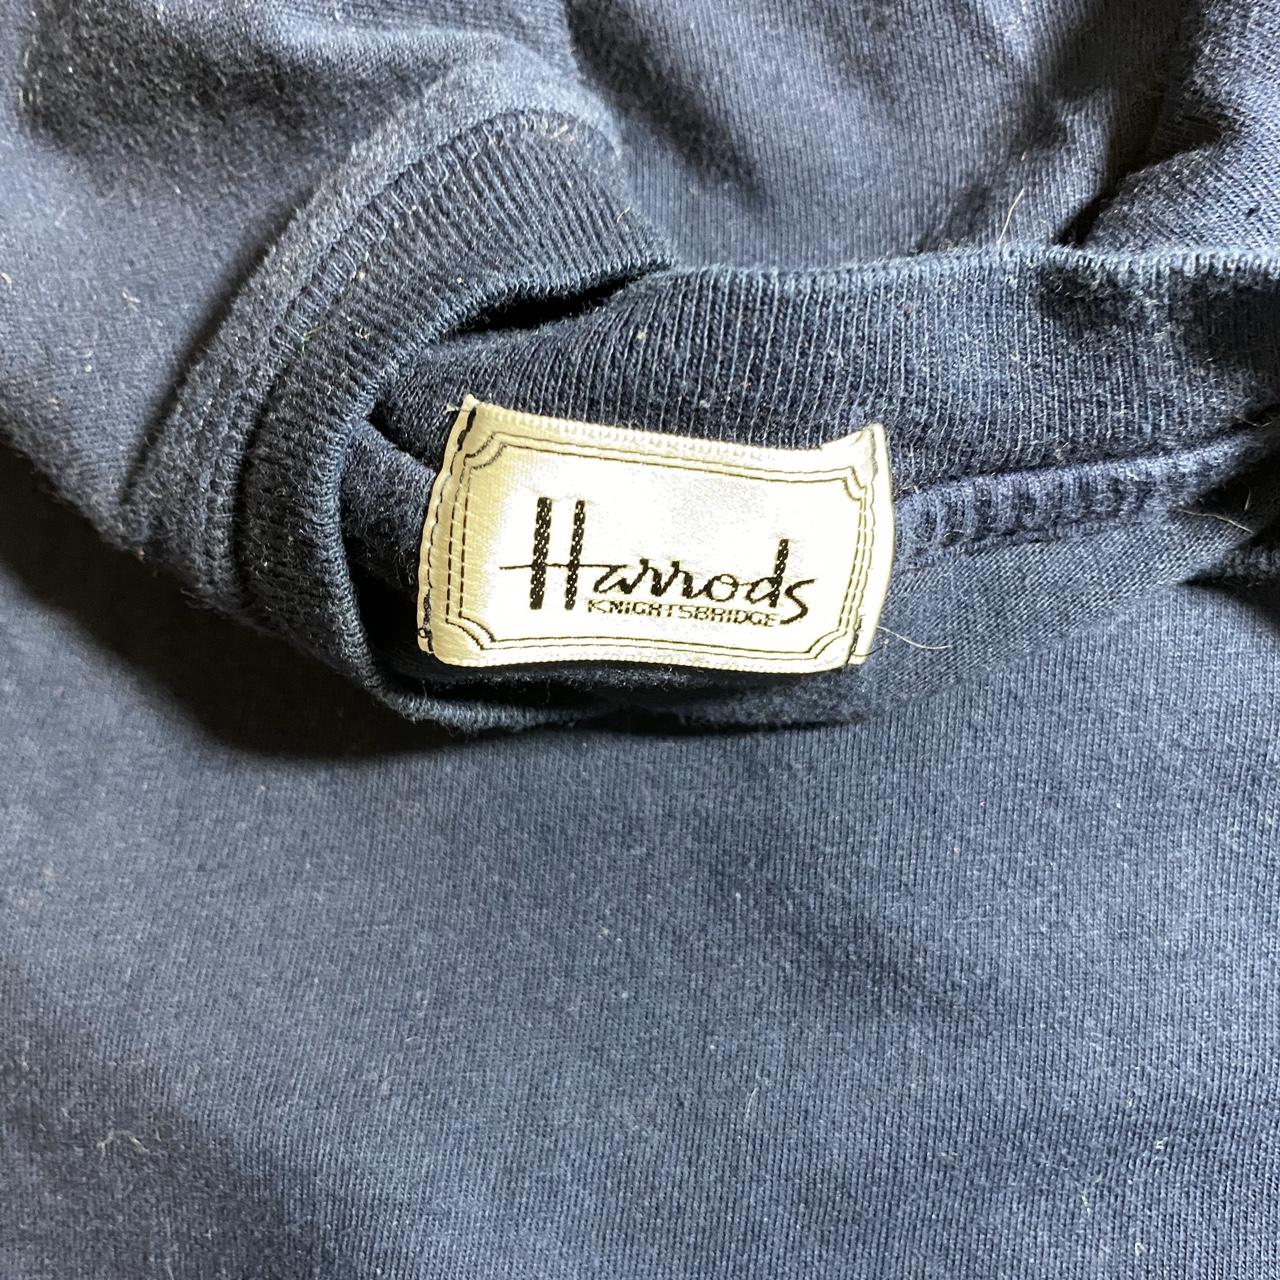 Product Image 3 - Vintage Harrods shirt size medium.